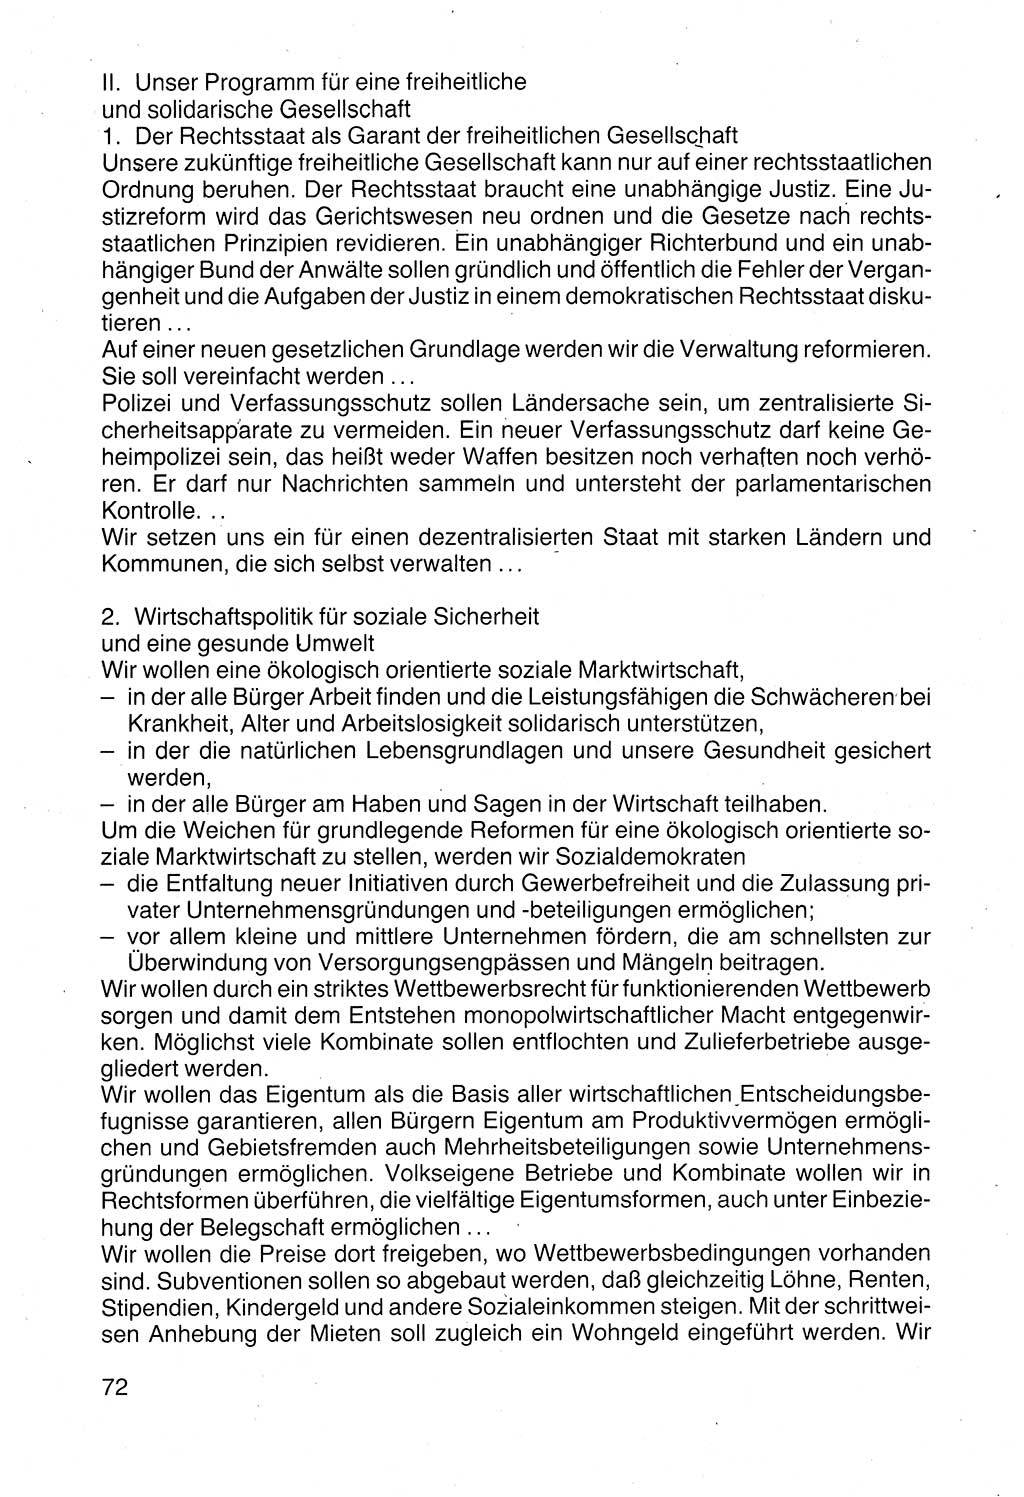 Politische Parteien und Bewegungen der DDR (Deutsche Demokratische Republik) über sich selbst 1990, Seite 72 (Pol. Part. Bew. DDR 1990, S. 72)